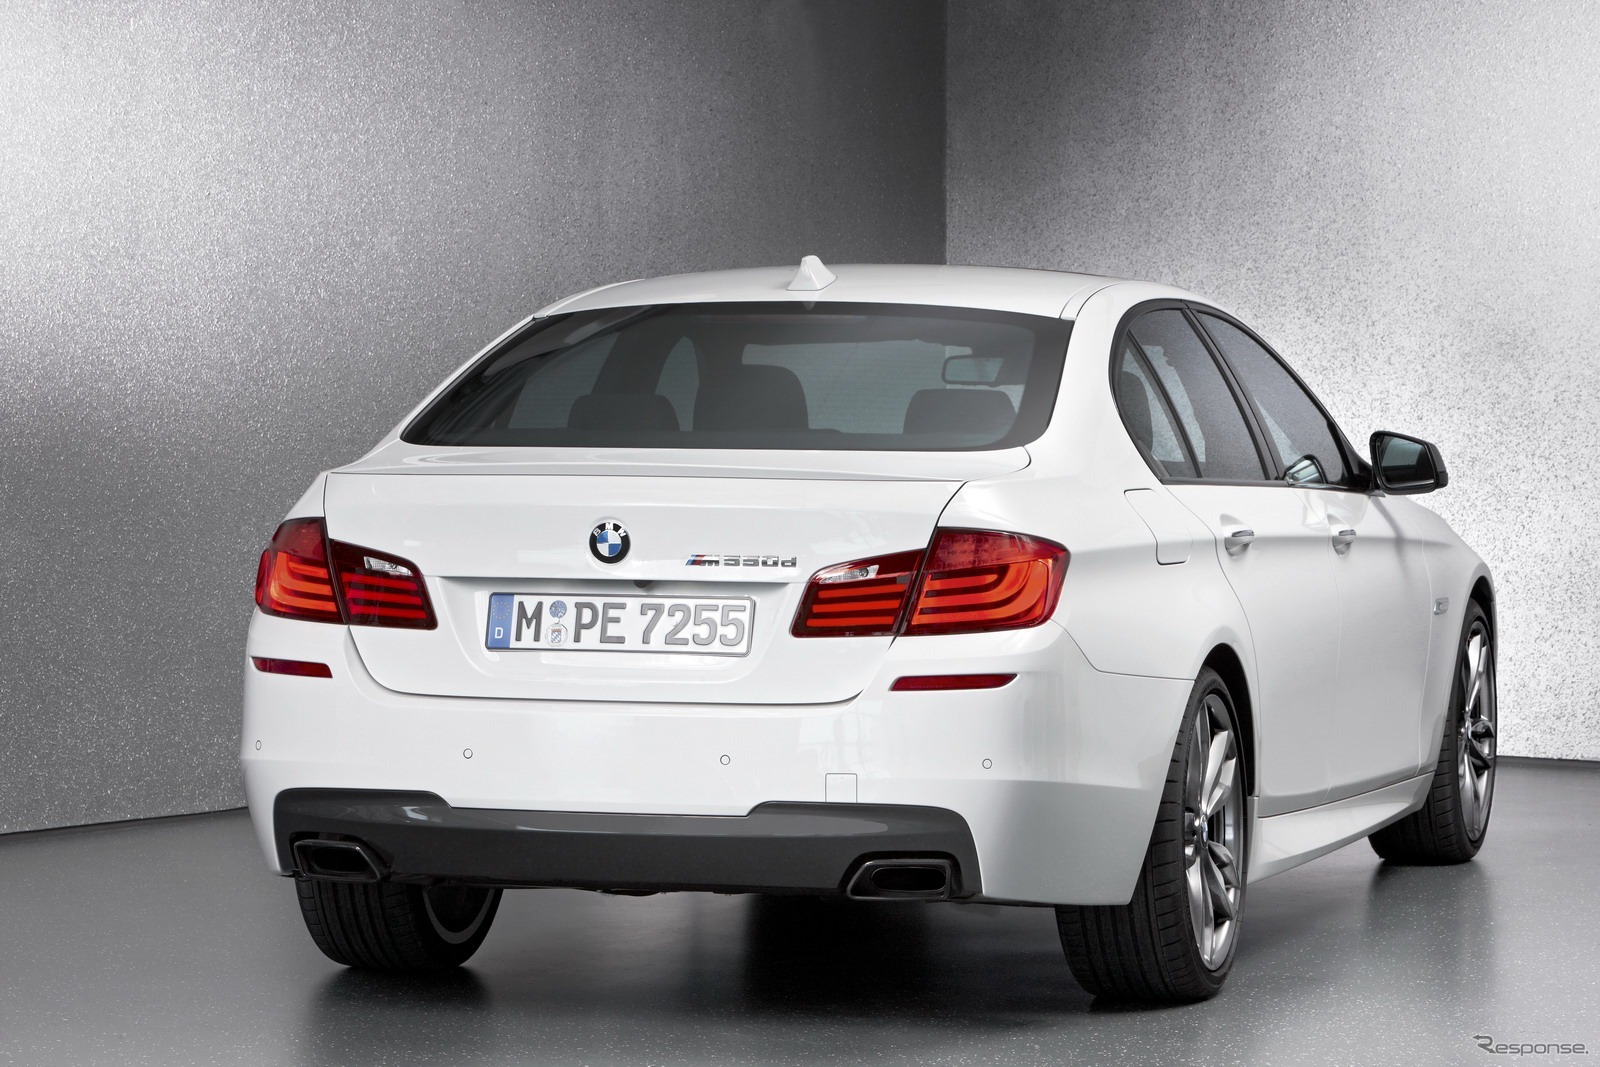 BMW5シリーズの高性能ディーゼル搭載車、M550d xドライブ